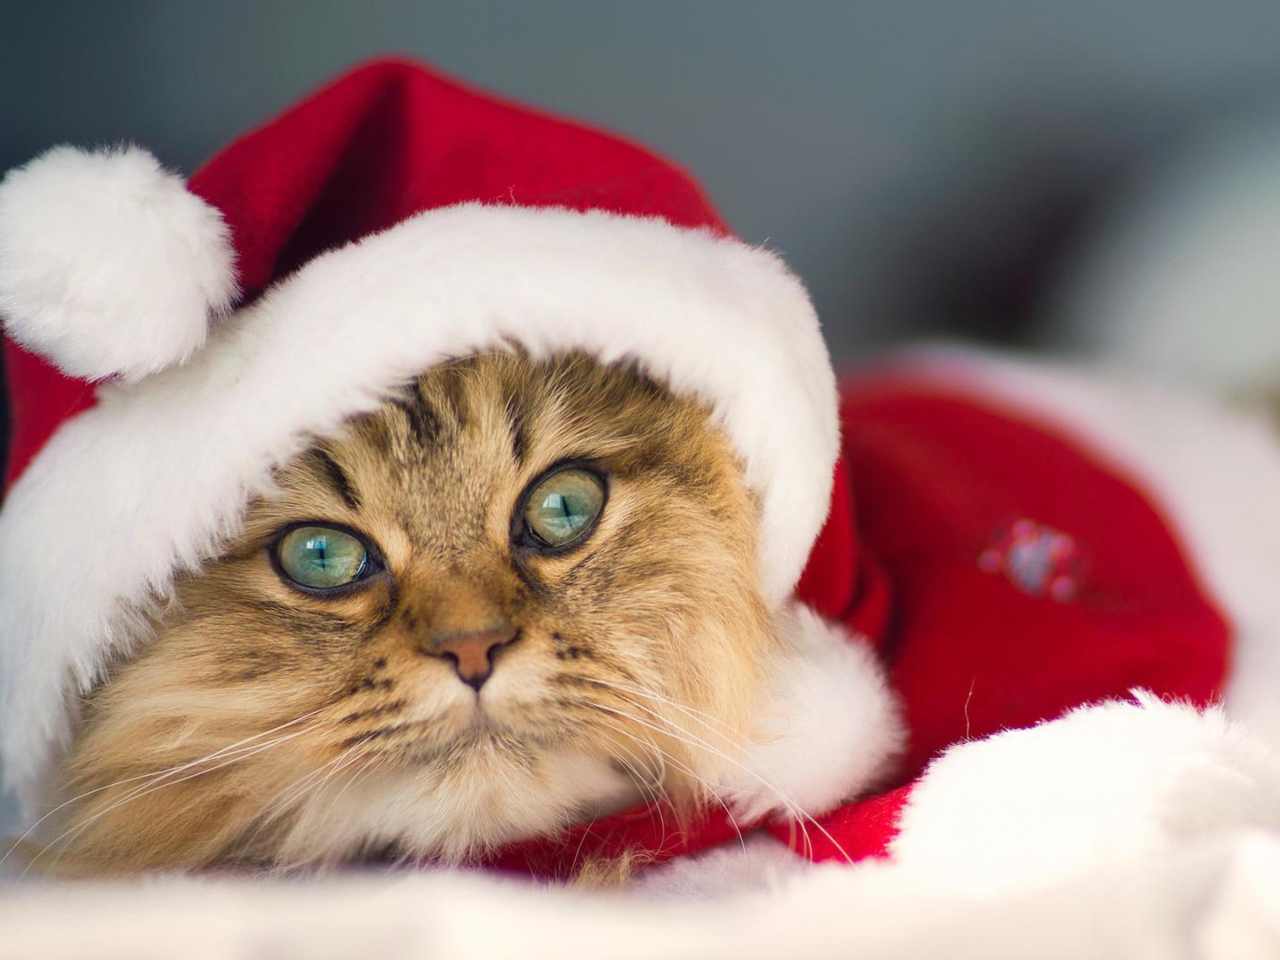 Cute Christmas Cat wallpaper 1280x960